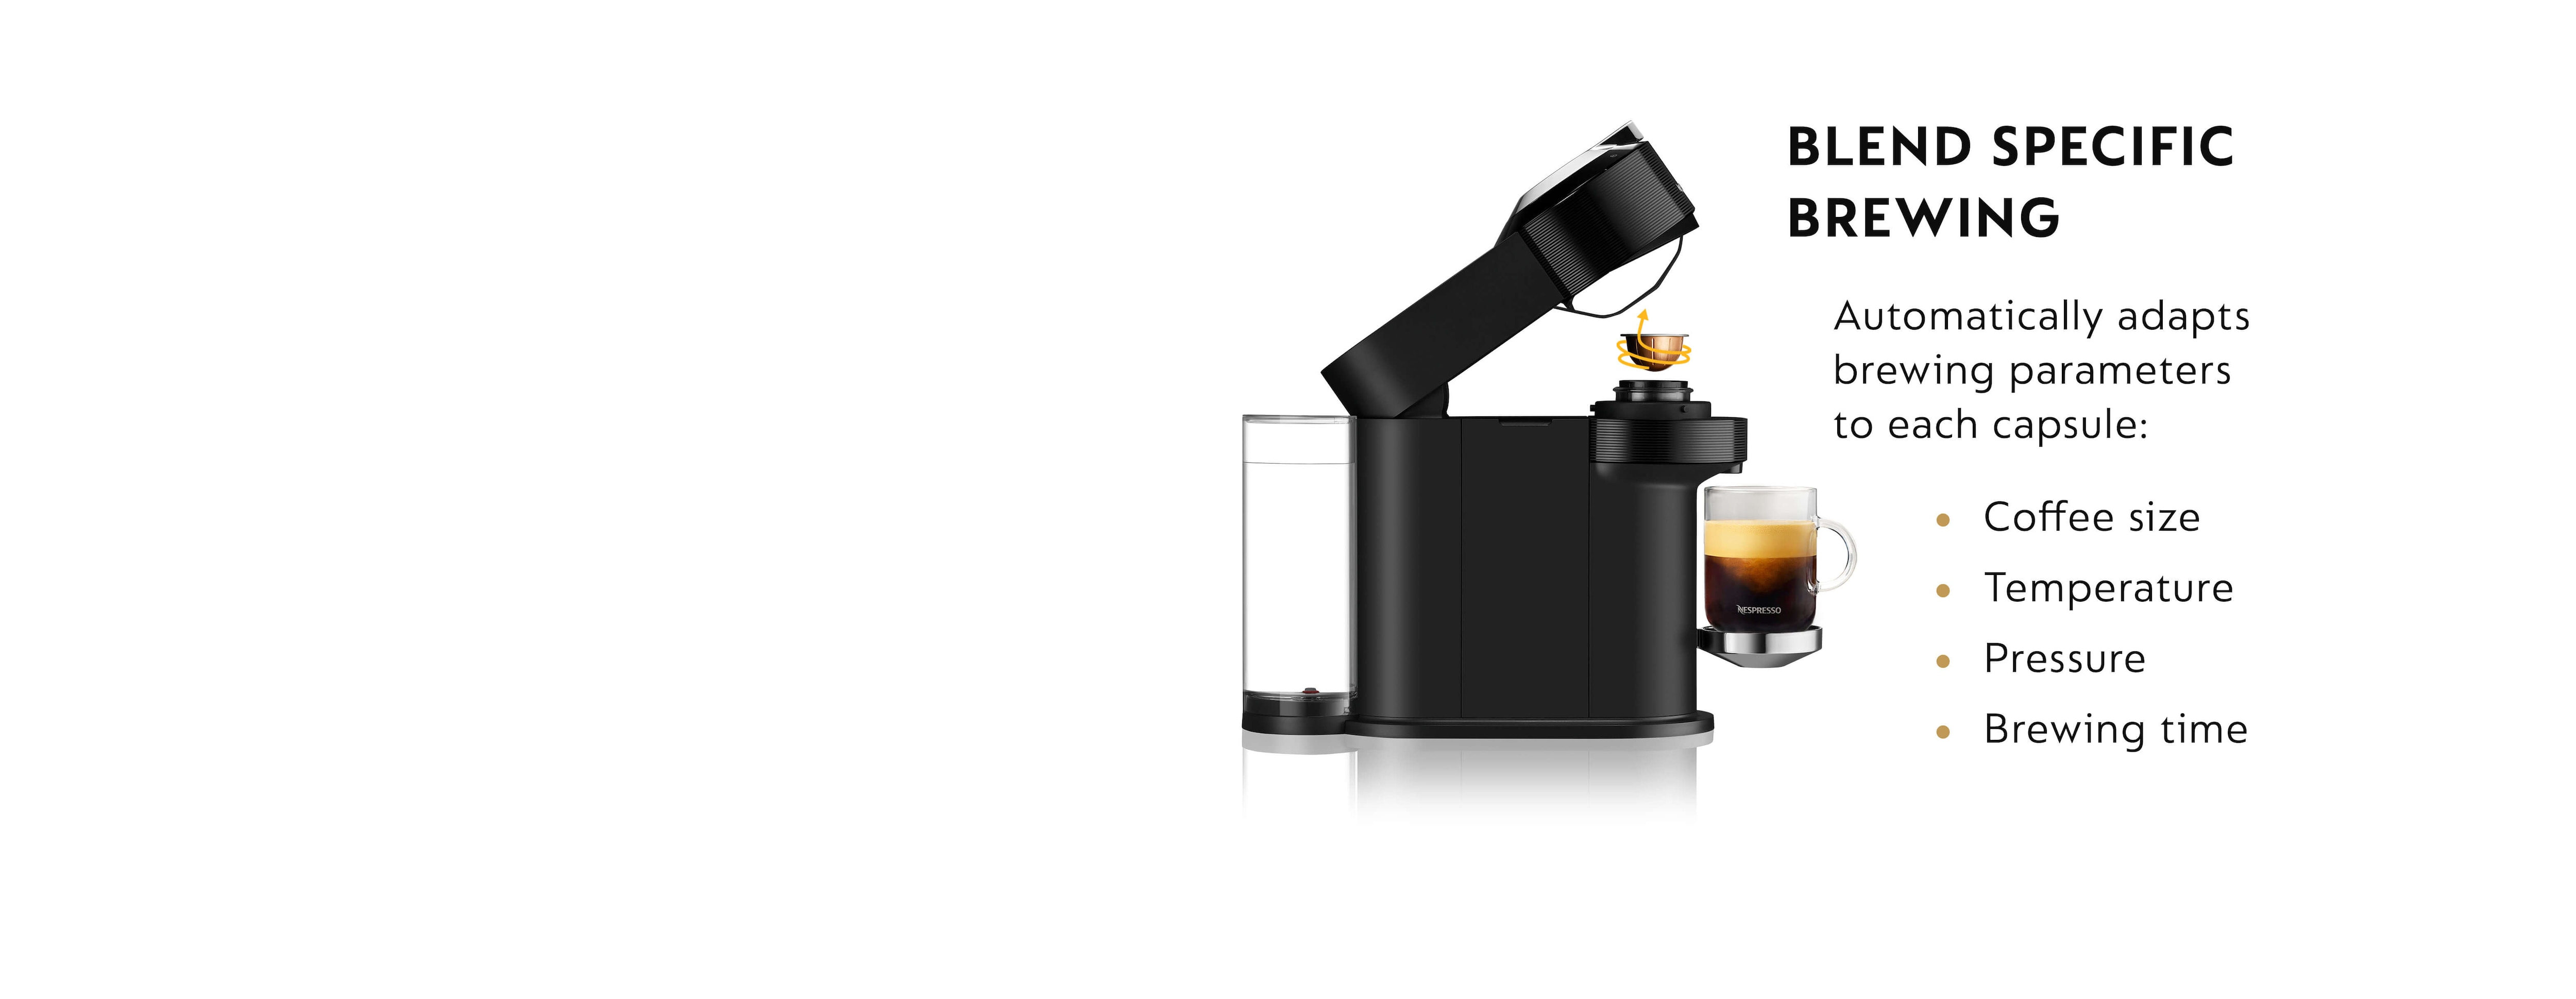 Nespresso Vertuo Next Premium Espresso Machine by DeLonghi - Black